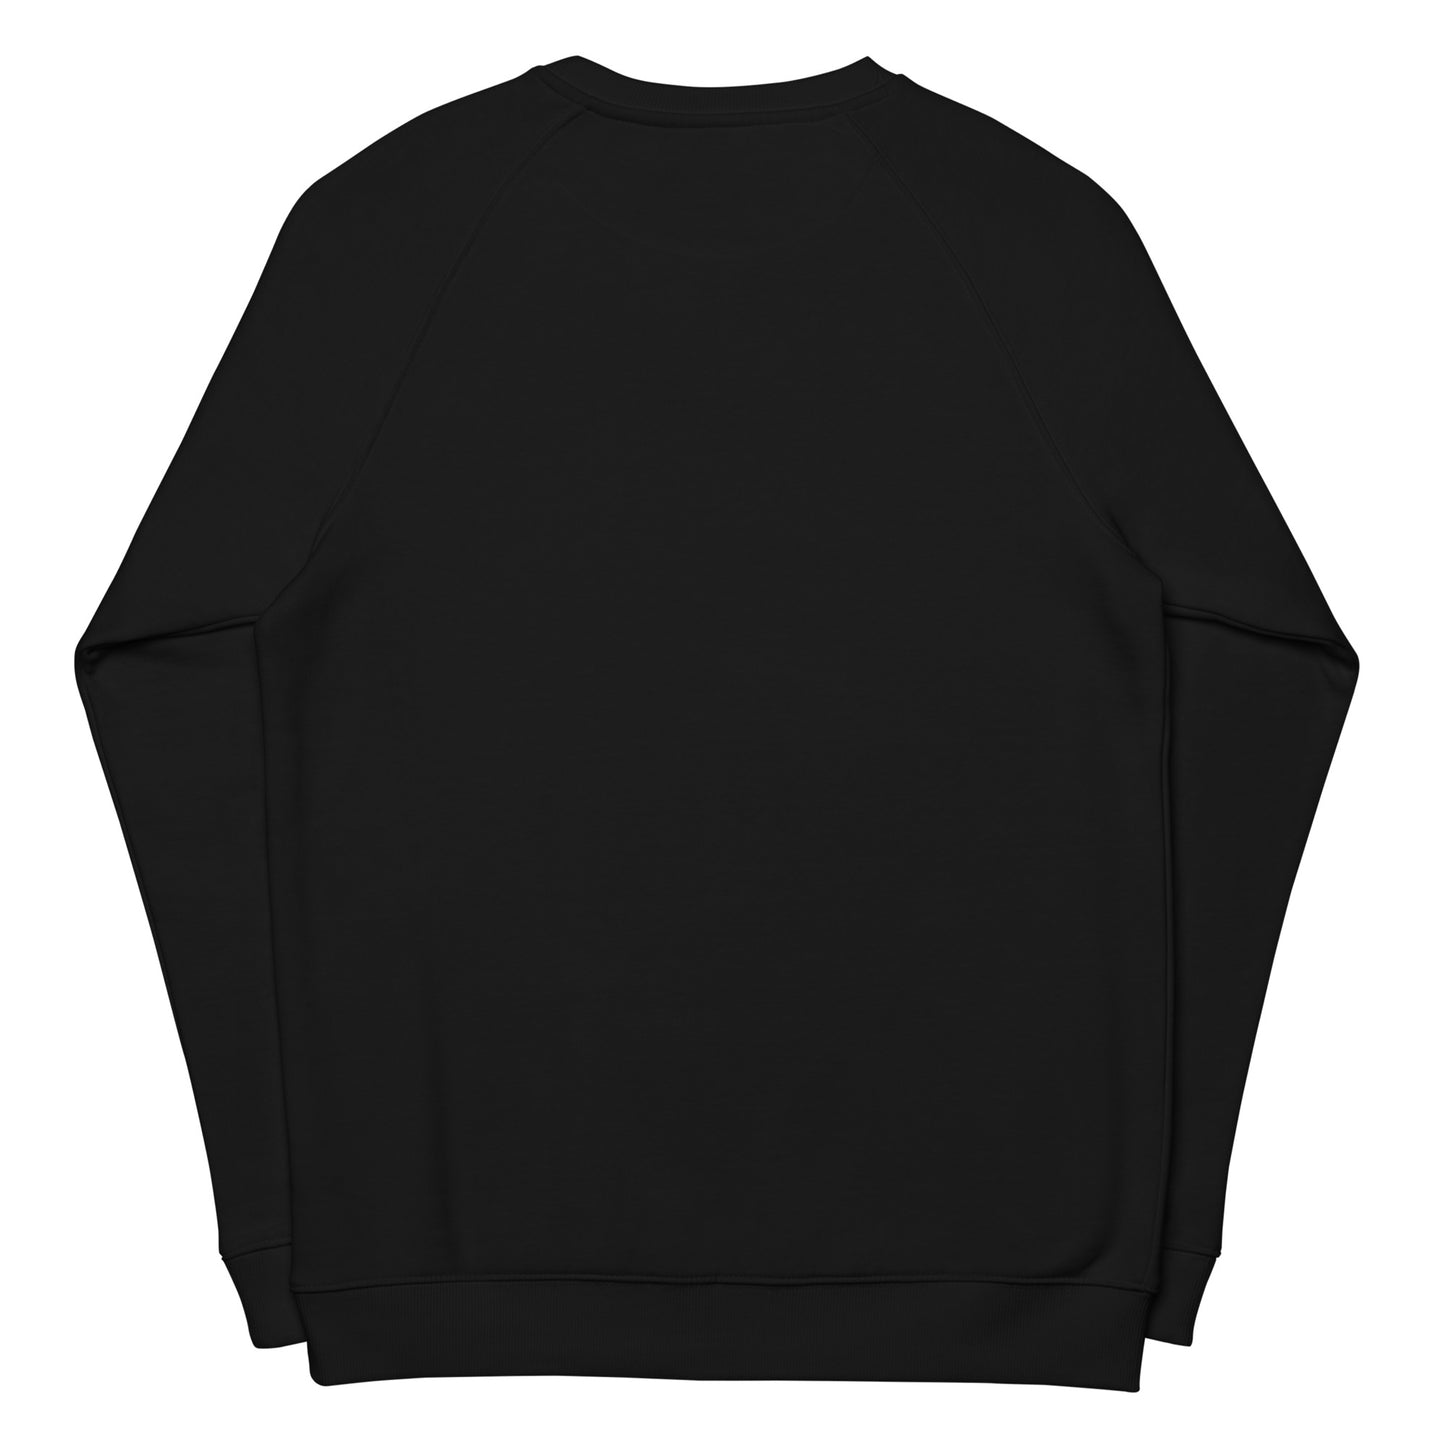 Unisex organic Glo sweatshirt (black)